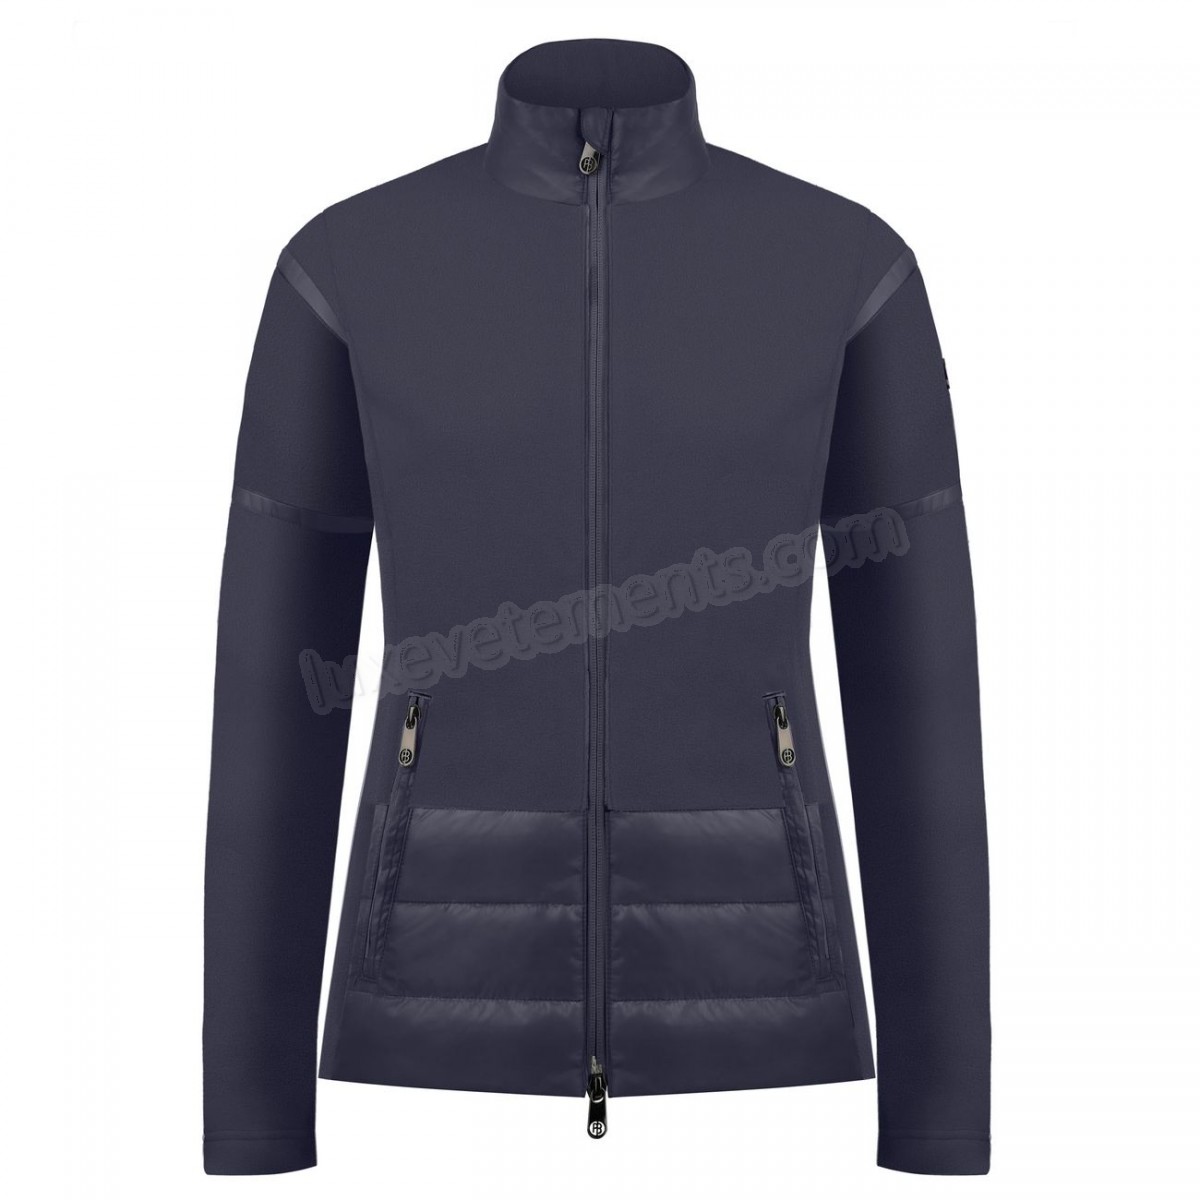 Poivre Blanc-Sports d'hiver femme POIVRE BLANC Veste Polaire Poivre Blanc Hybrid Fleece Jacket 1601 Gothic Blue 4 Femme Vente en ligne - -3